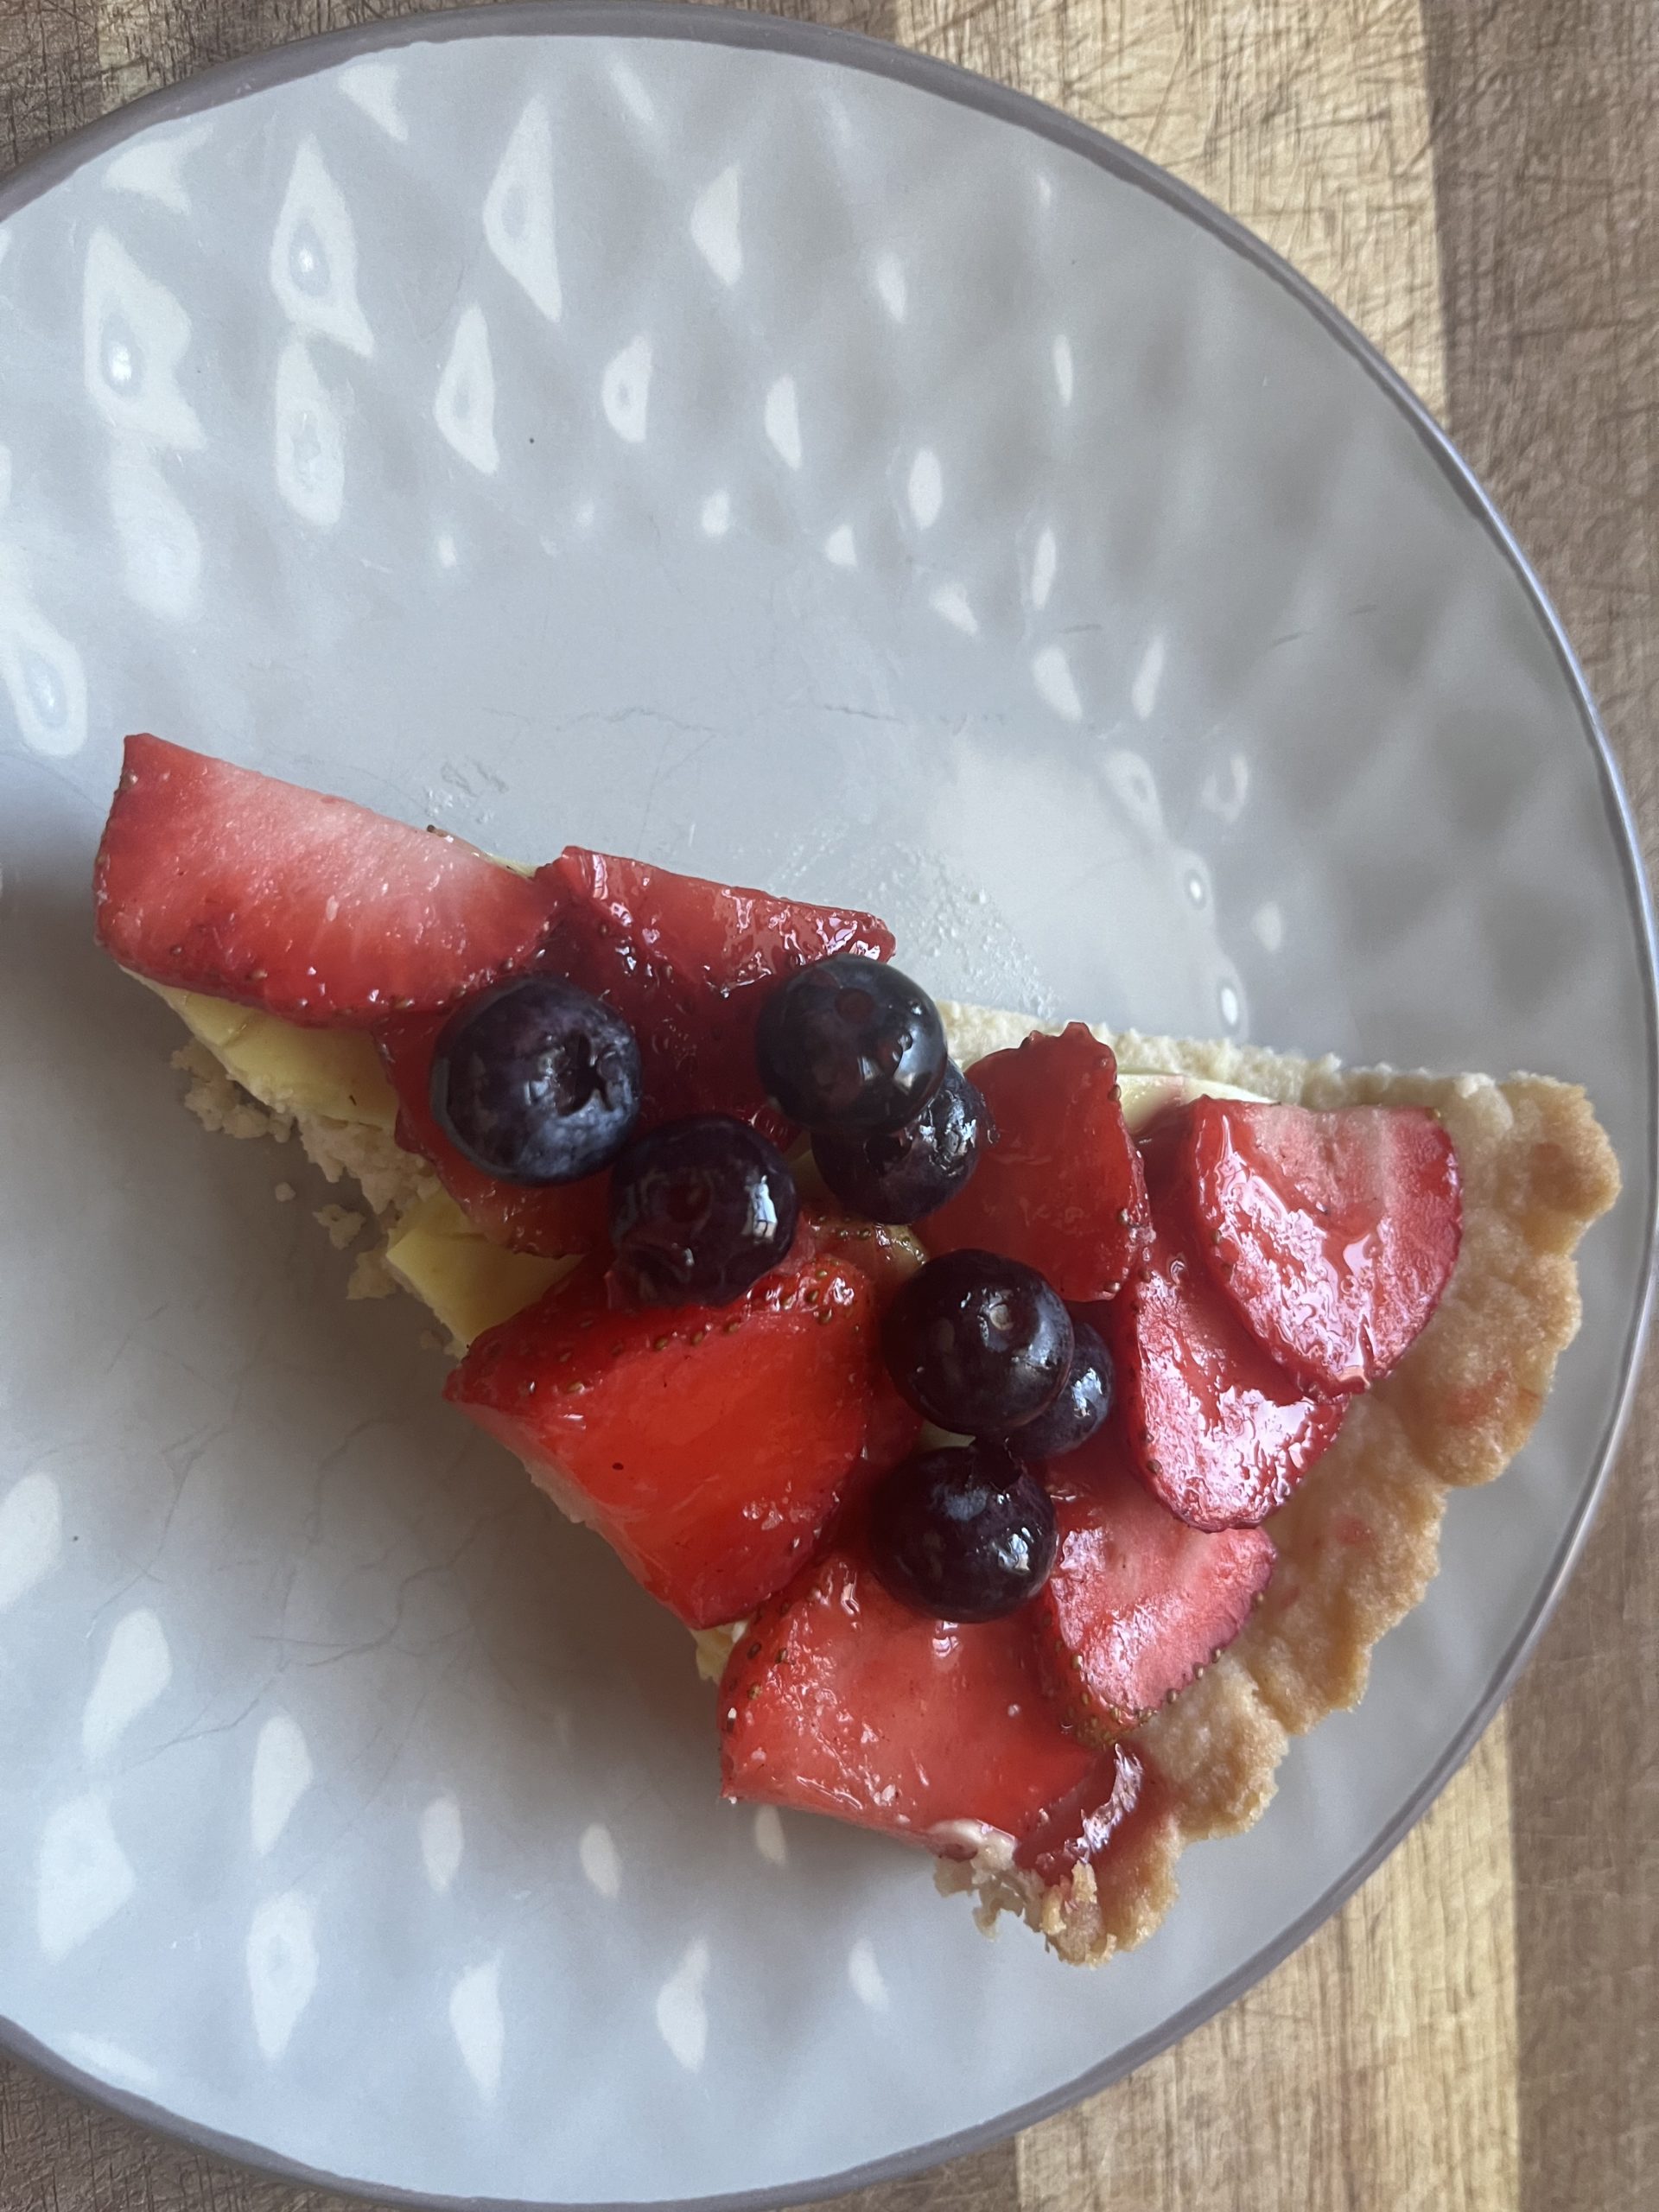 A slice of vegan fruit tart on a white plate